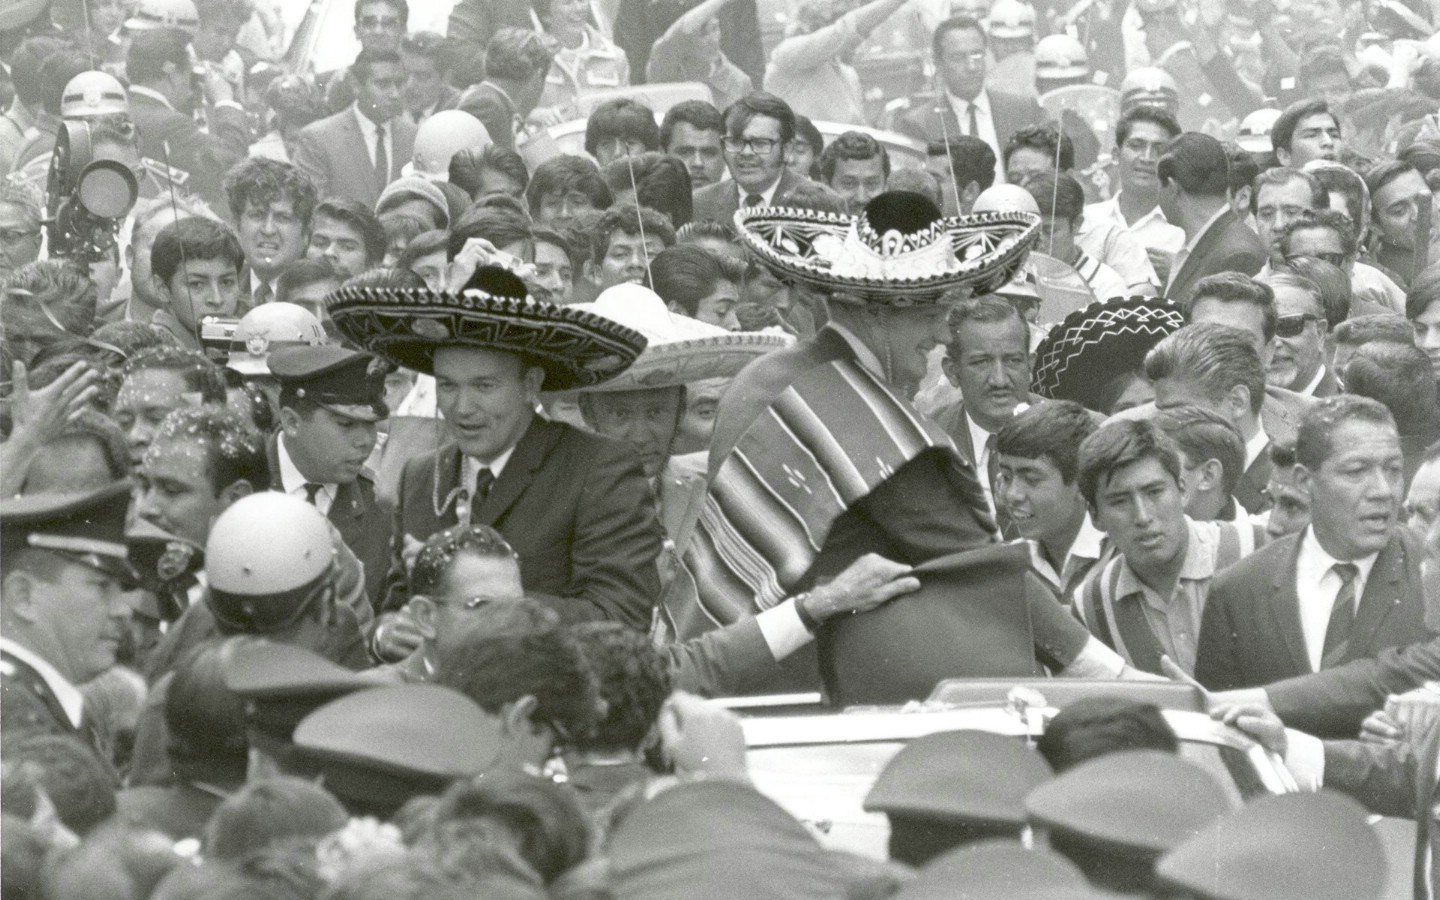 壁纸1440x900One Giant Leap for Mankind  Apollo 11 Astronauts Swarmed by Thousands In Mexico City Parade 墨西哥城的庆祝游行壁纸 阿波罗11号登月40周年纪念壁纸壁纸 阿波罗11号登月40周年纪念壁纸图片 阿波罗11号登月40周年纪念壁纸素材 人文壁纸 人文图库 人文图片素材桌面壁纸